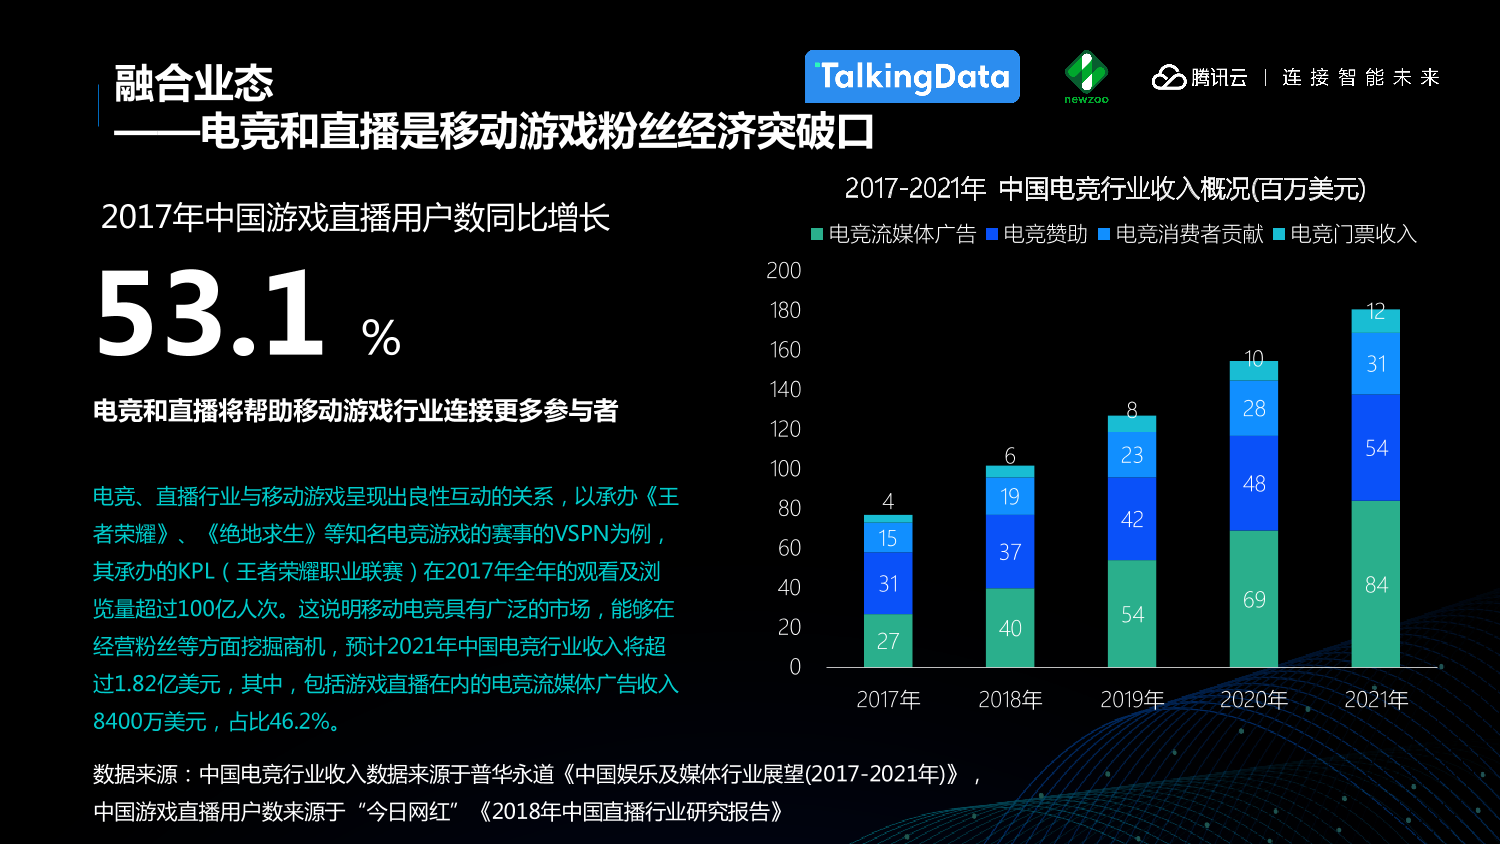 中国移动游戏行业趋势报告_1527559577212-11